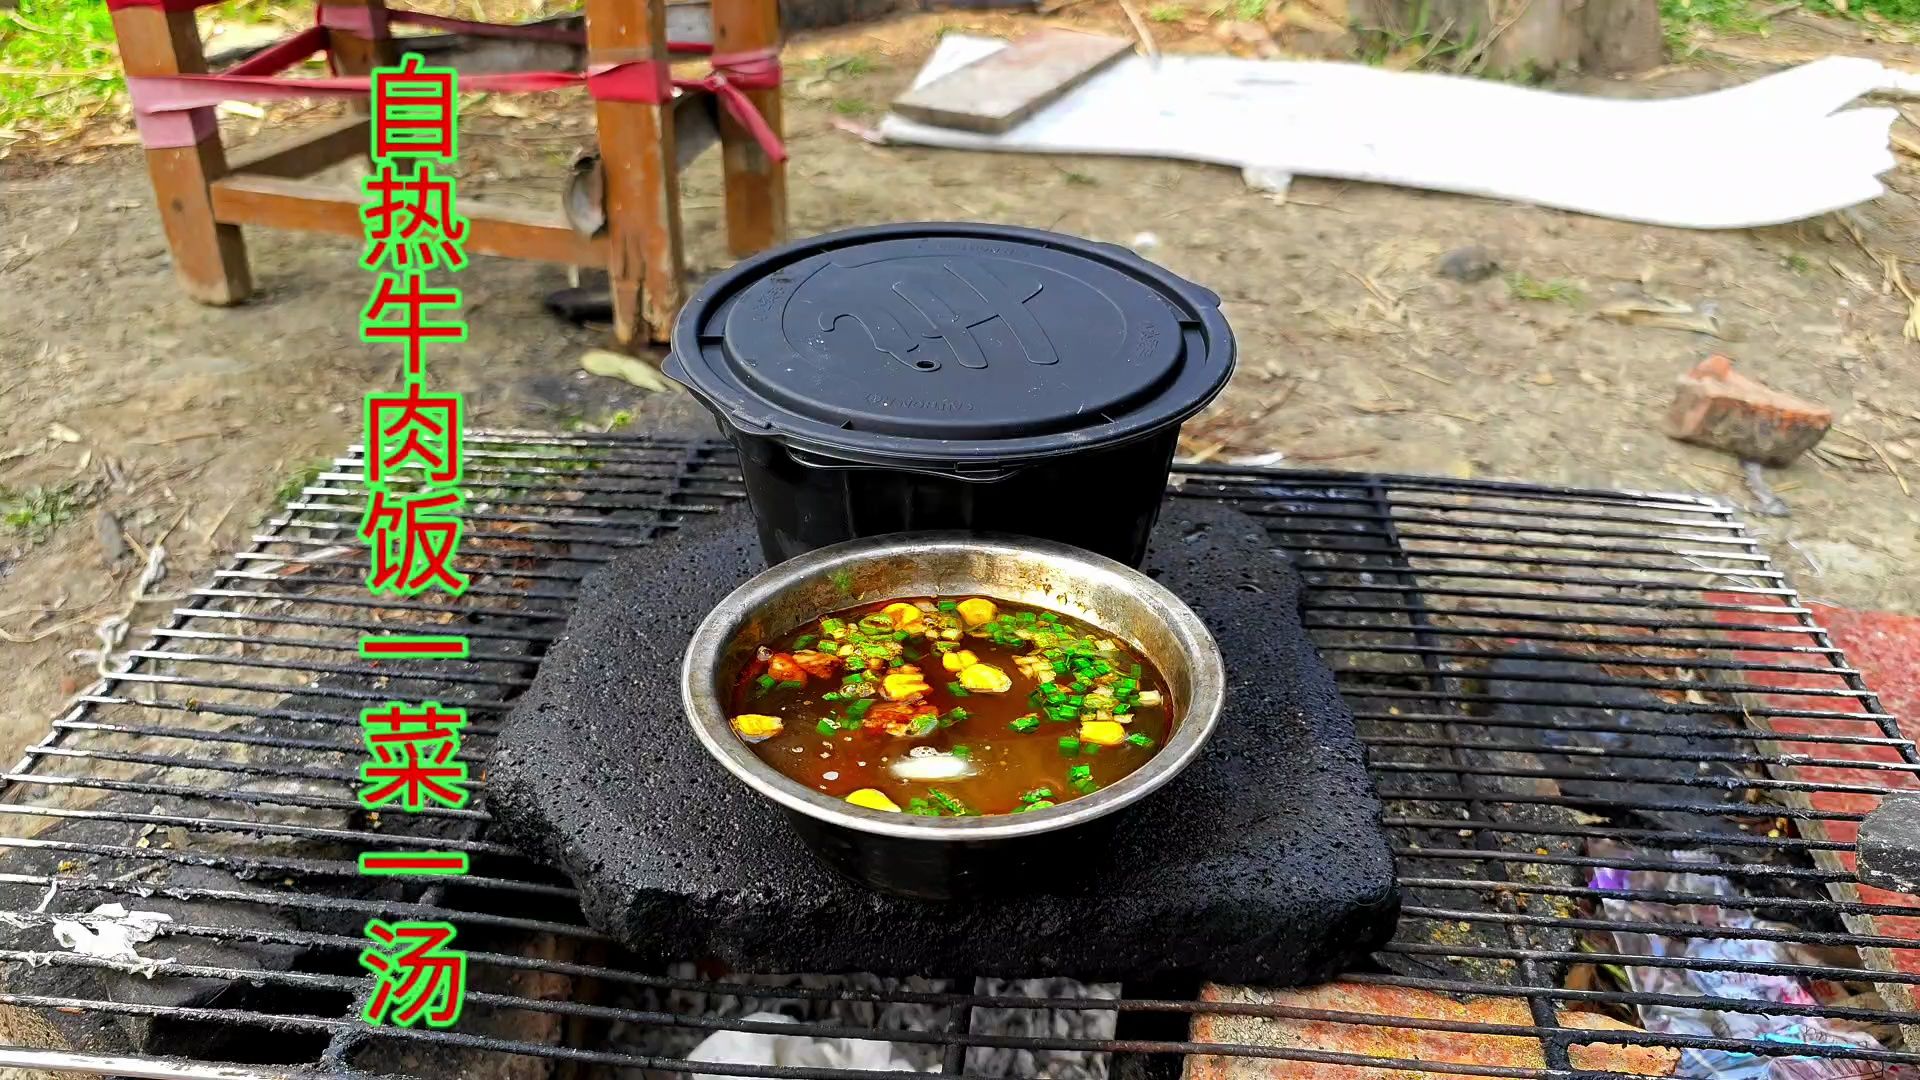 20买了一盒自热牛肉饭，带到营地后煮了一盒饭一碗汤，吃的太香了